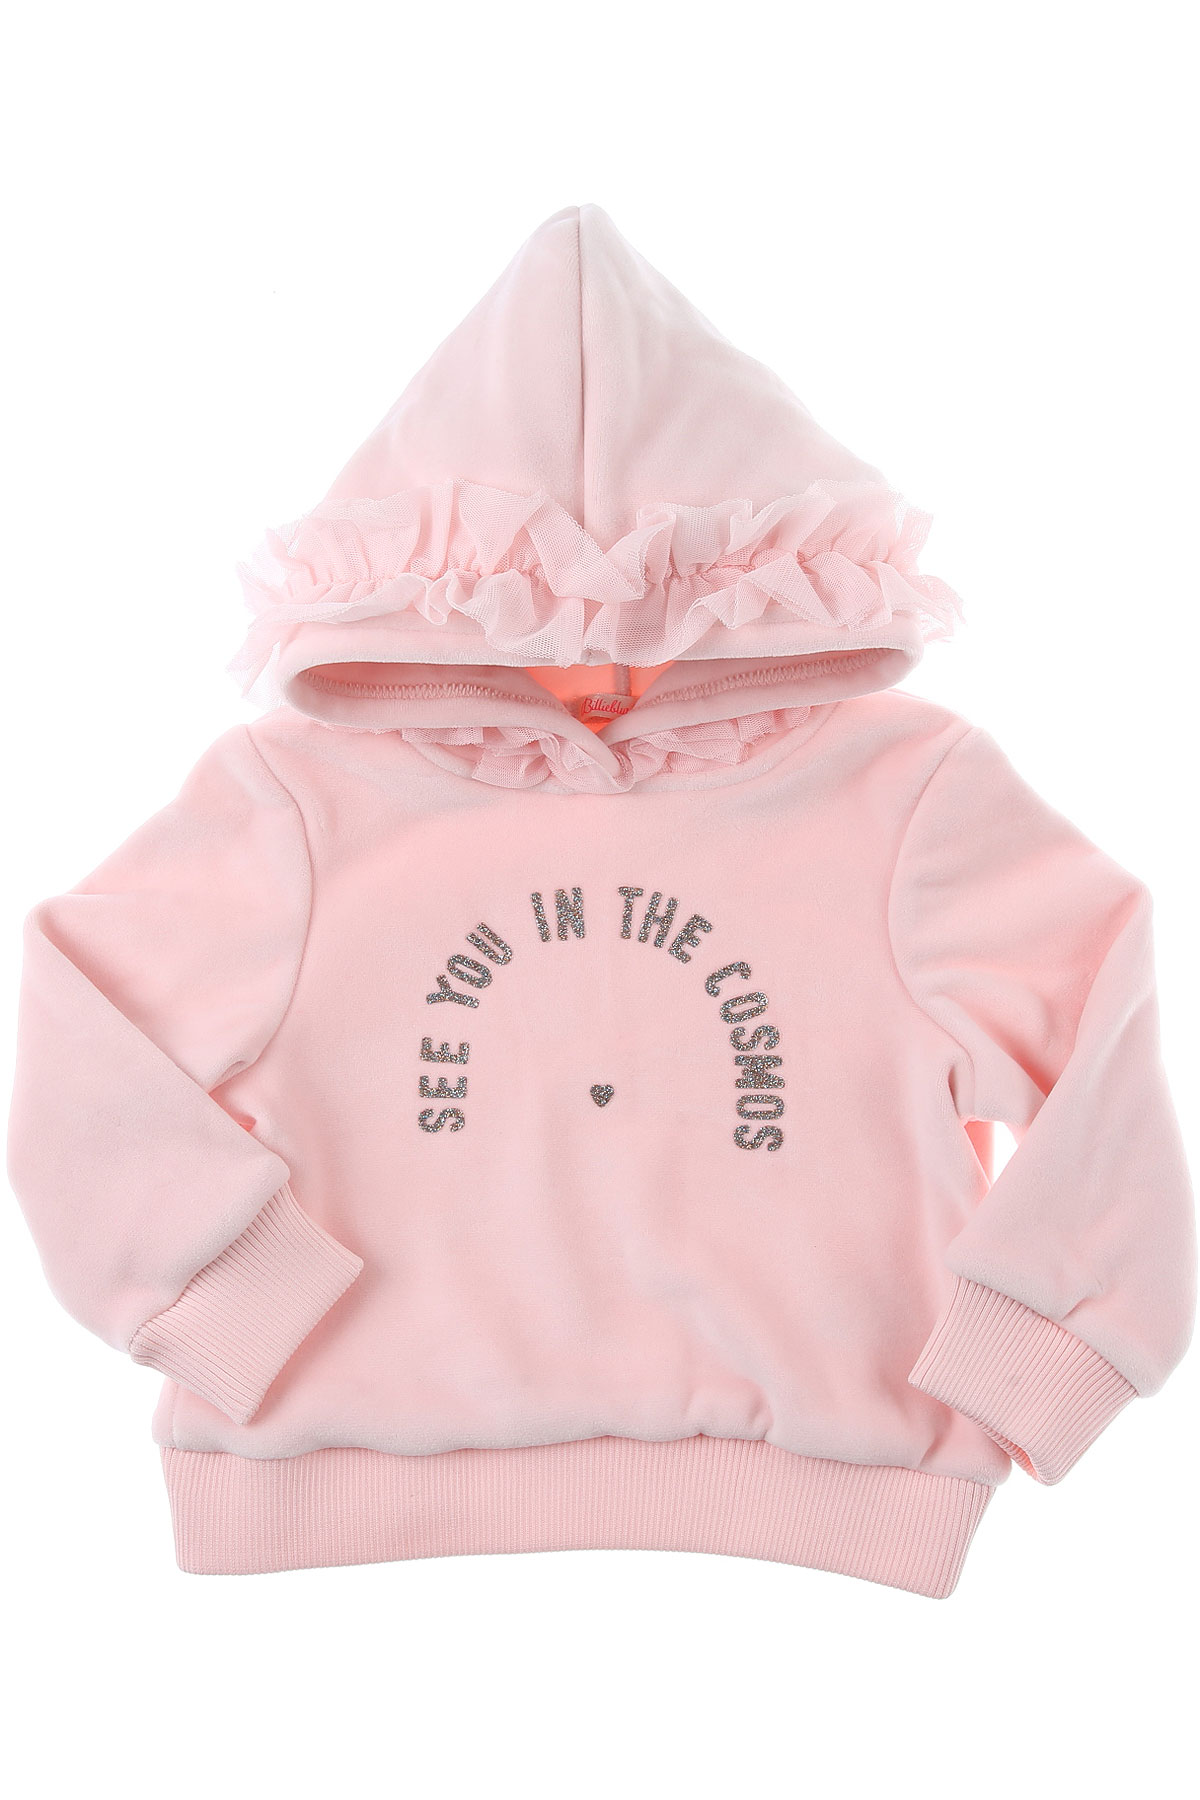 Billieblush Kinder Sweatshirt & Kapuzenpullover für Mädchen Günstig im Sale, Baby-Rose, Polyester, 2017, 10Y 12Y 2Y 5Y 6Y